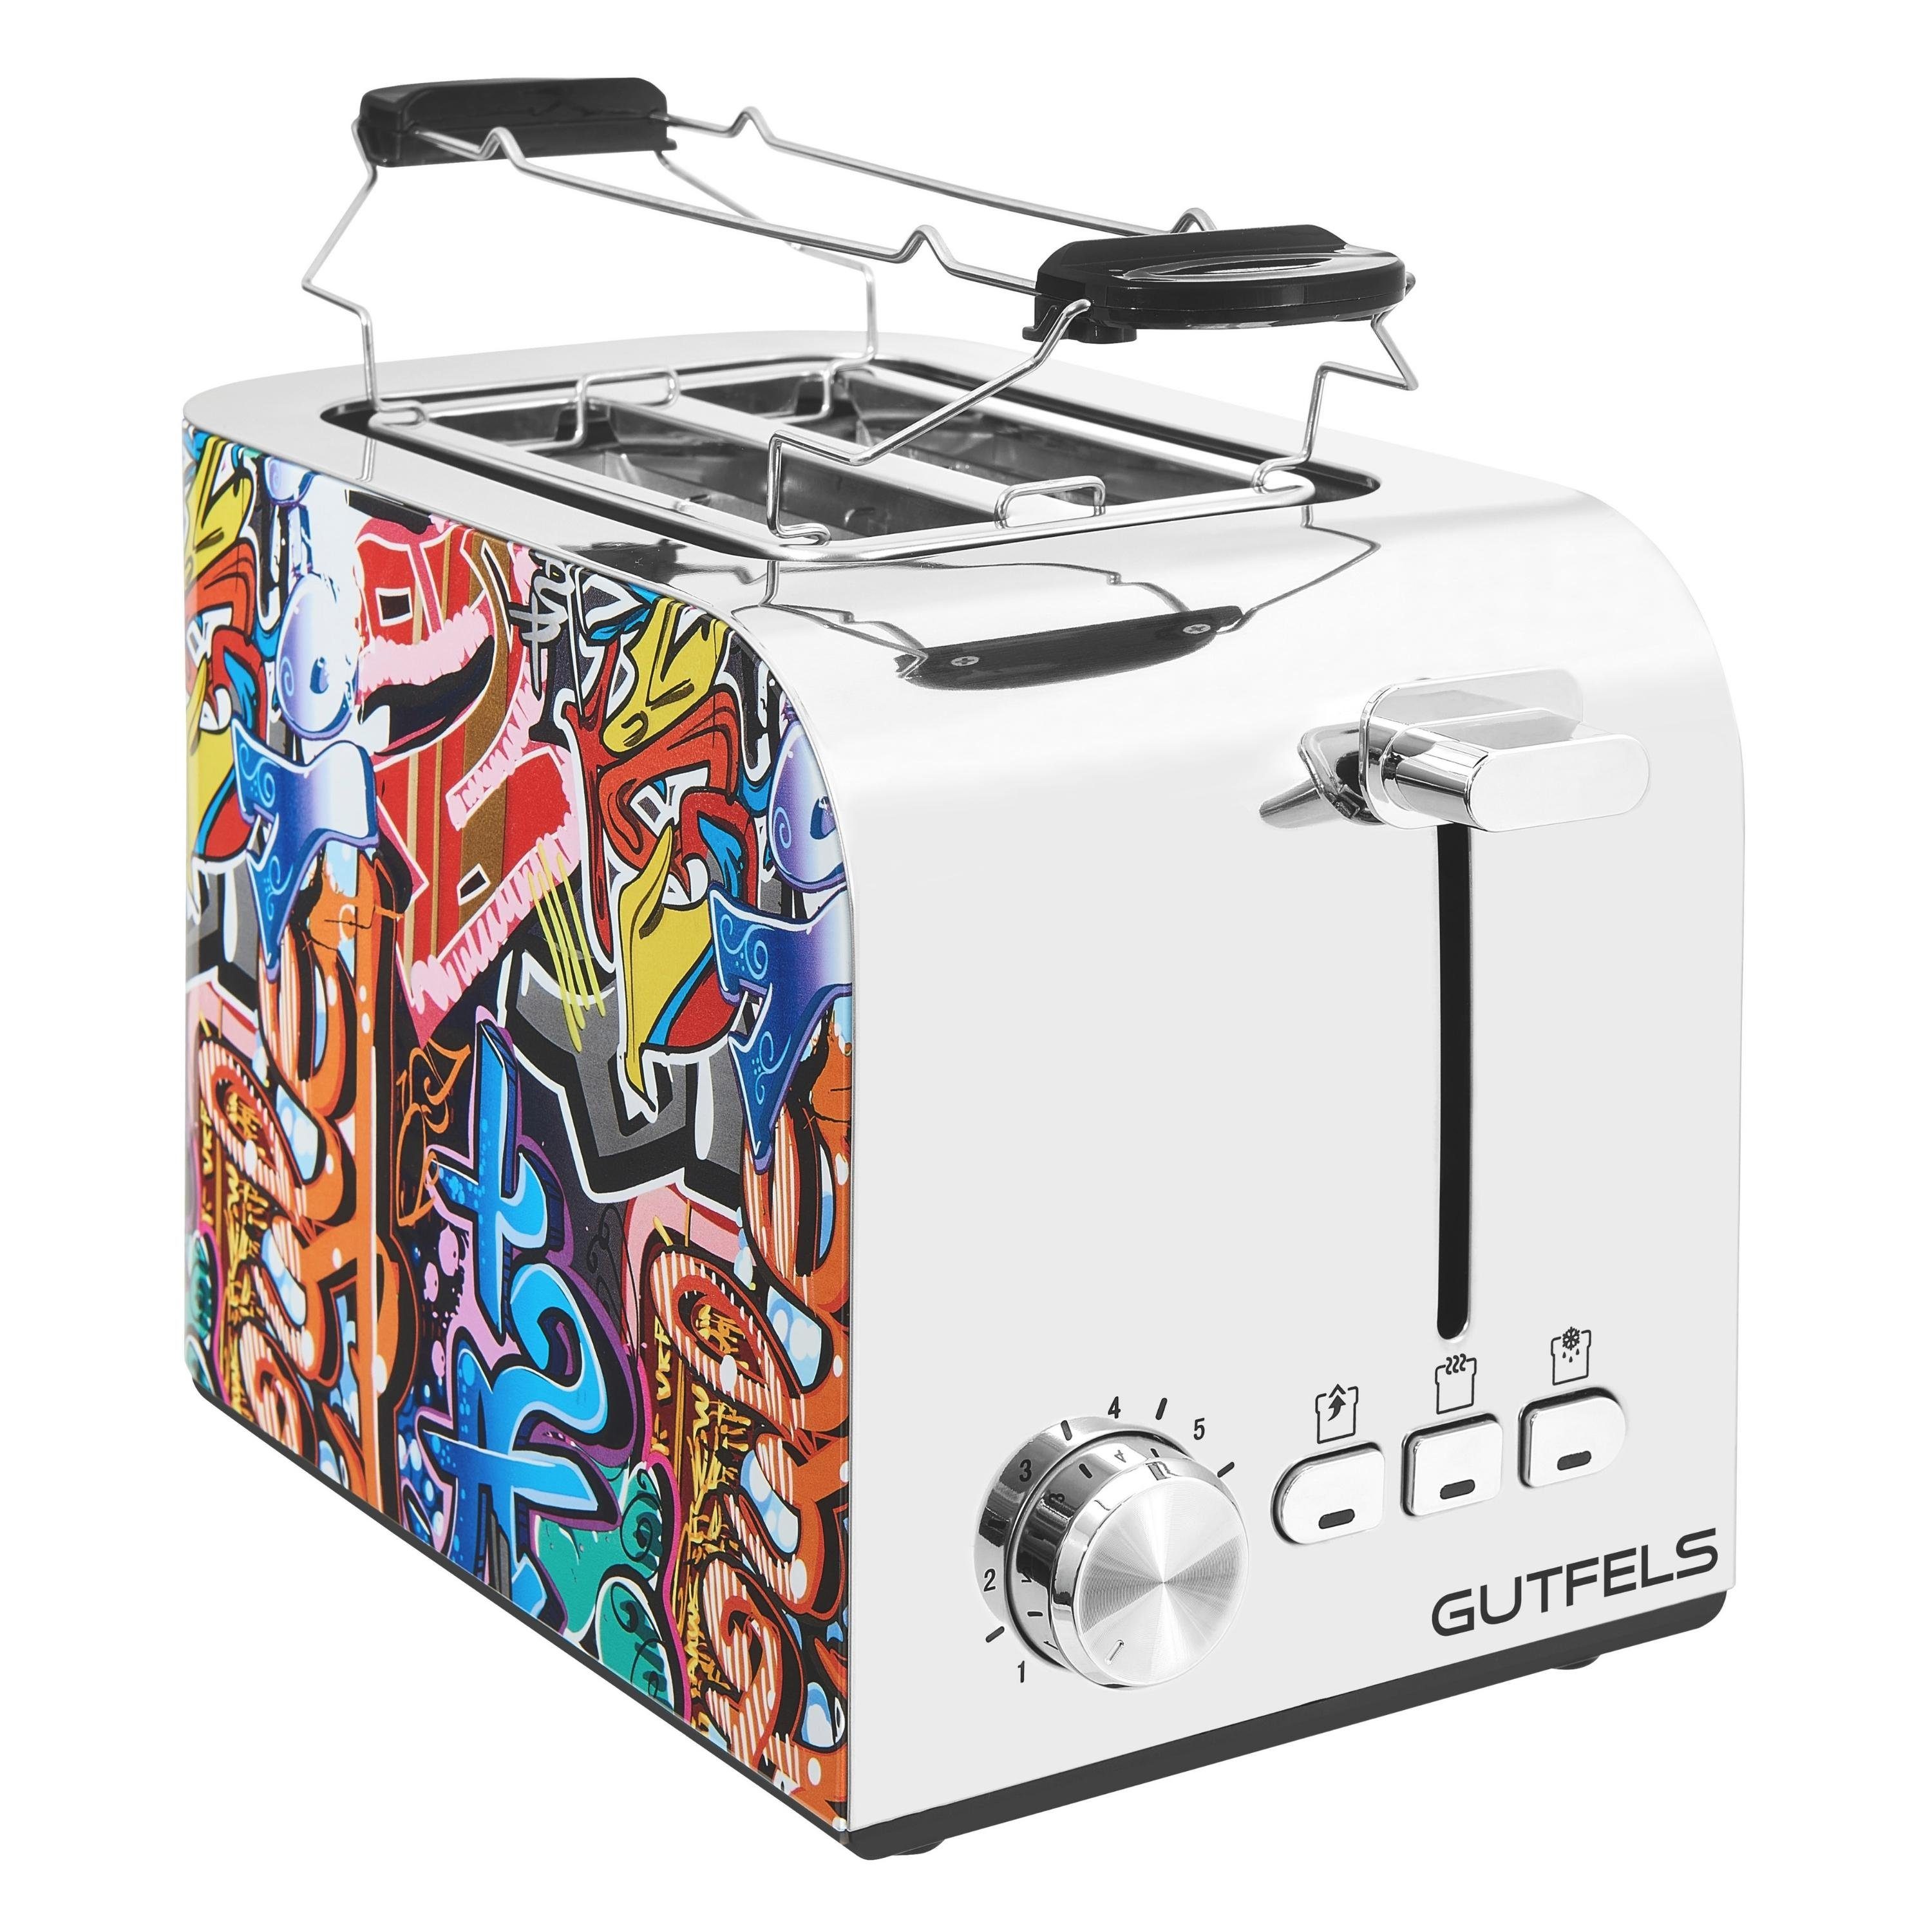 Schlitze, 2 Gutfels Toaster, W, 3010 Stufen, Toaster kurze G, 2 7 Graffiti-Style Scheiben, TOAST 850 Zentrierfunktion für